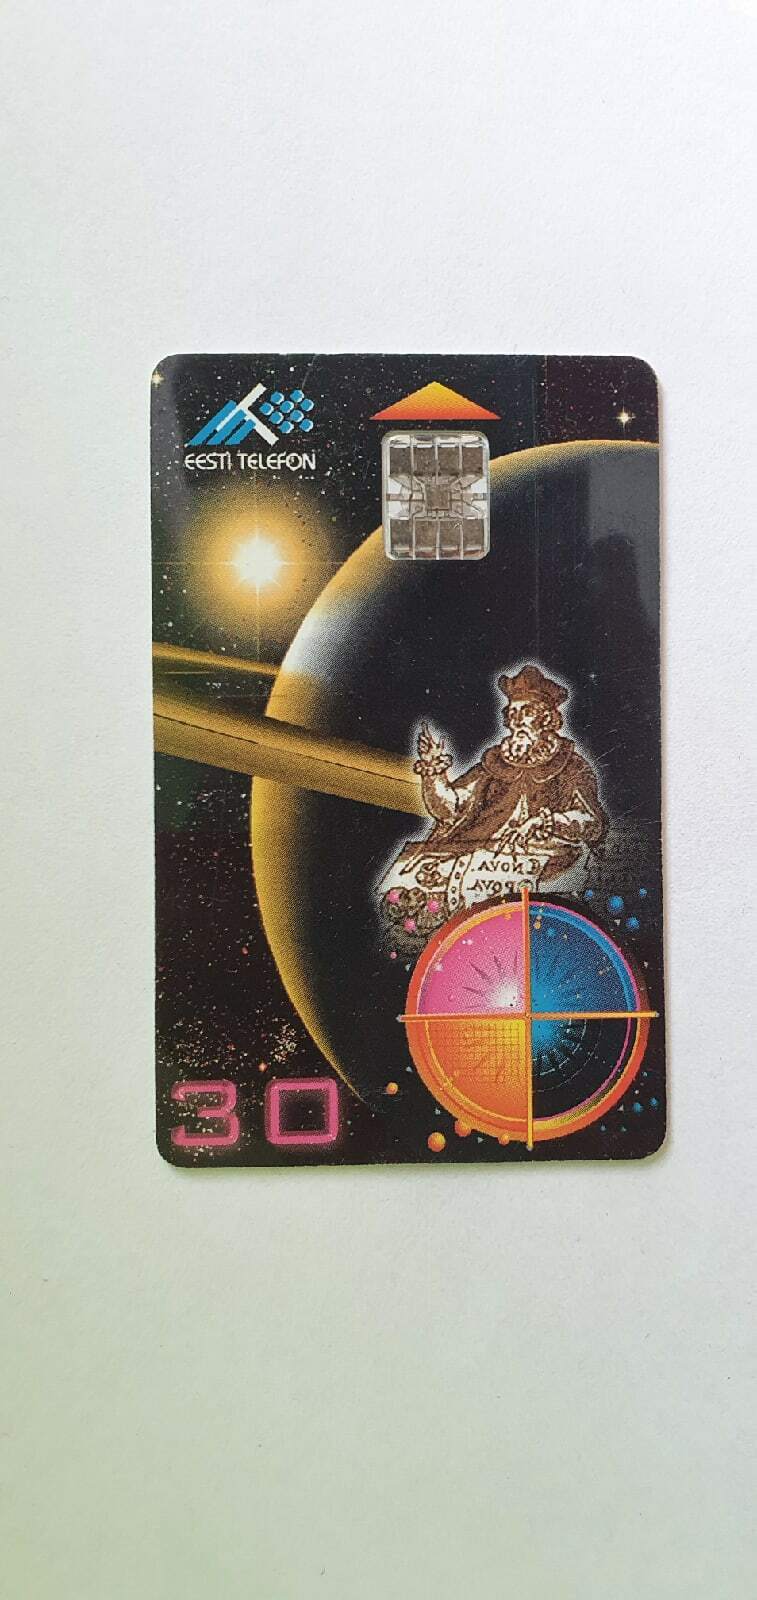 Phone Card (Estonian, Eesti telefon) 1998 year